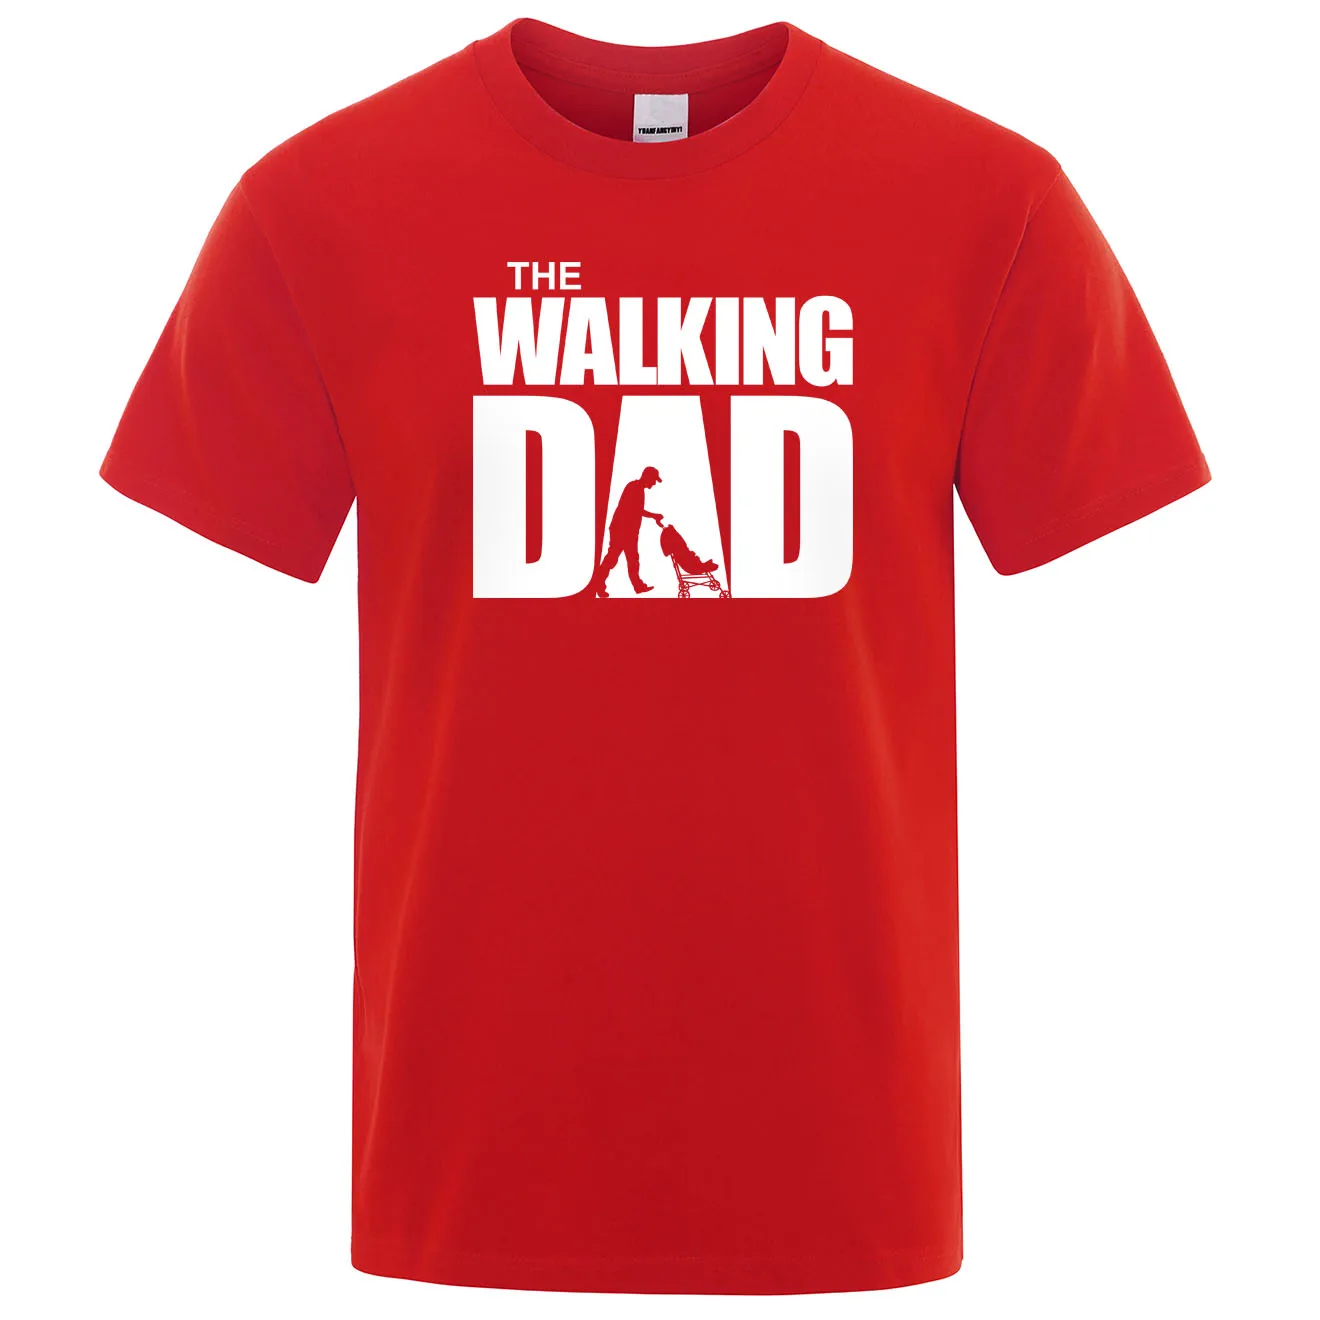 Летняя футболка, футболка с ходячим папой, Мужская крутая повседневная мужская футболка, модные топы в стиле хип-хоп, уличная одежда, подарок на день отца, футболки